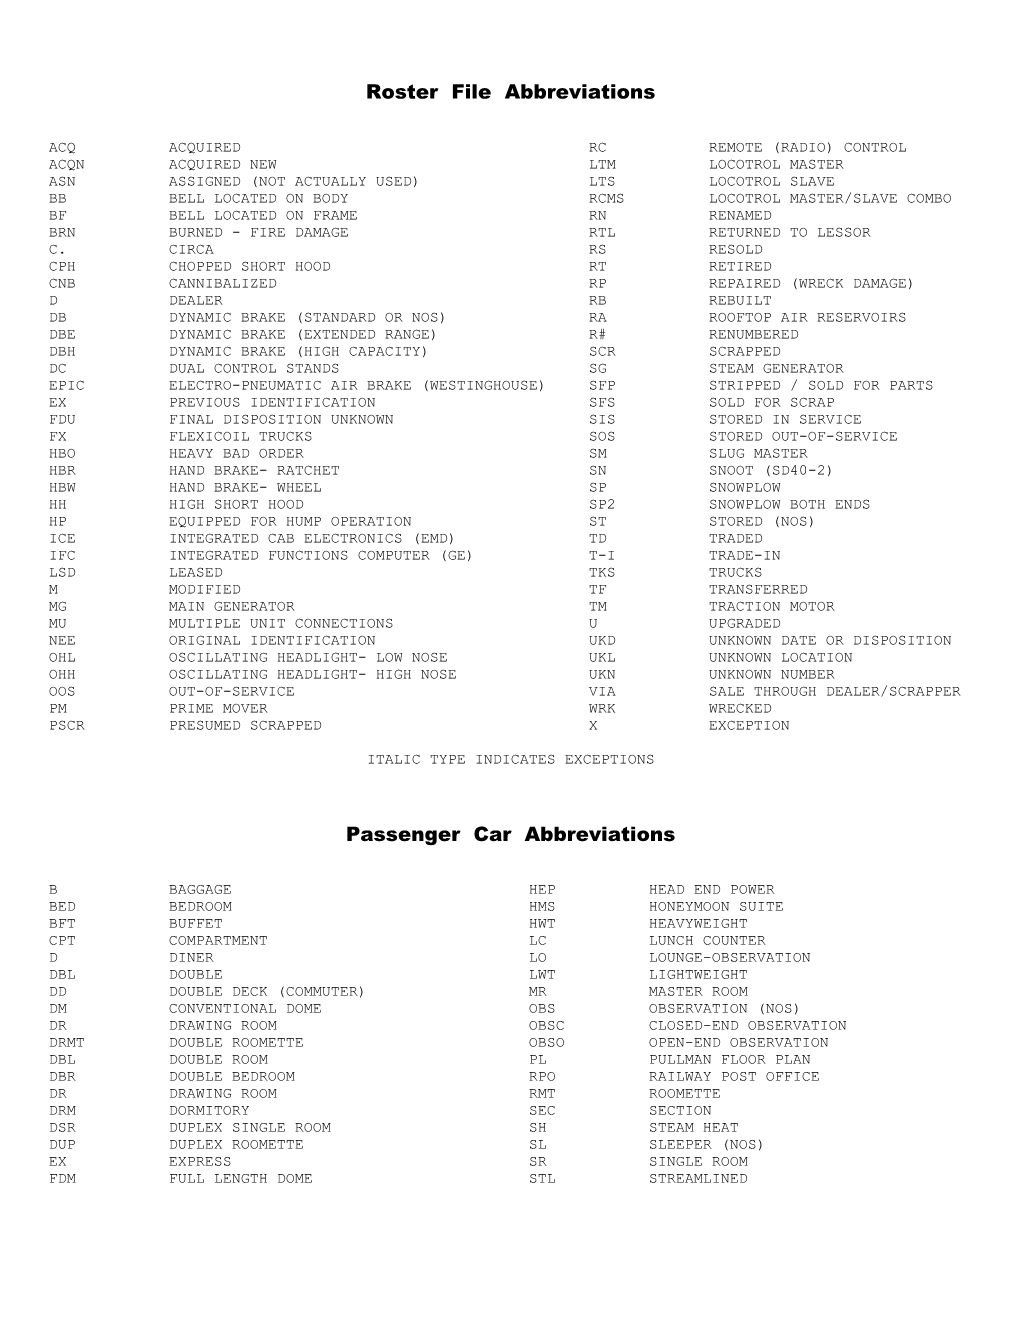 Railroad File Abbreviations